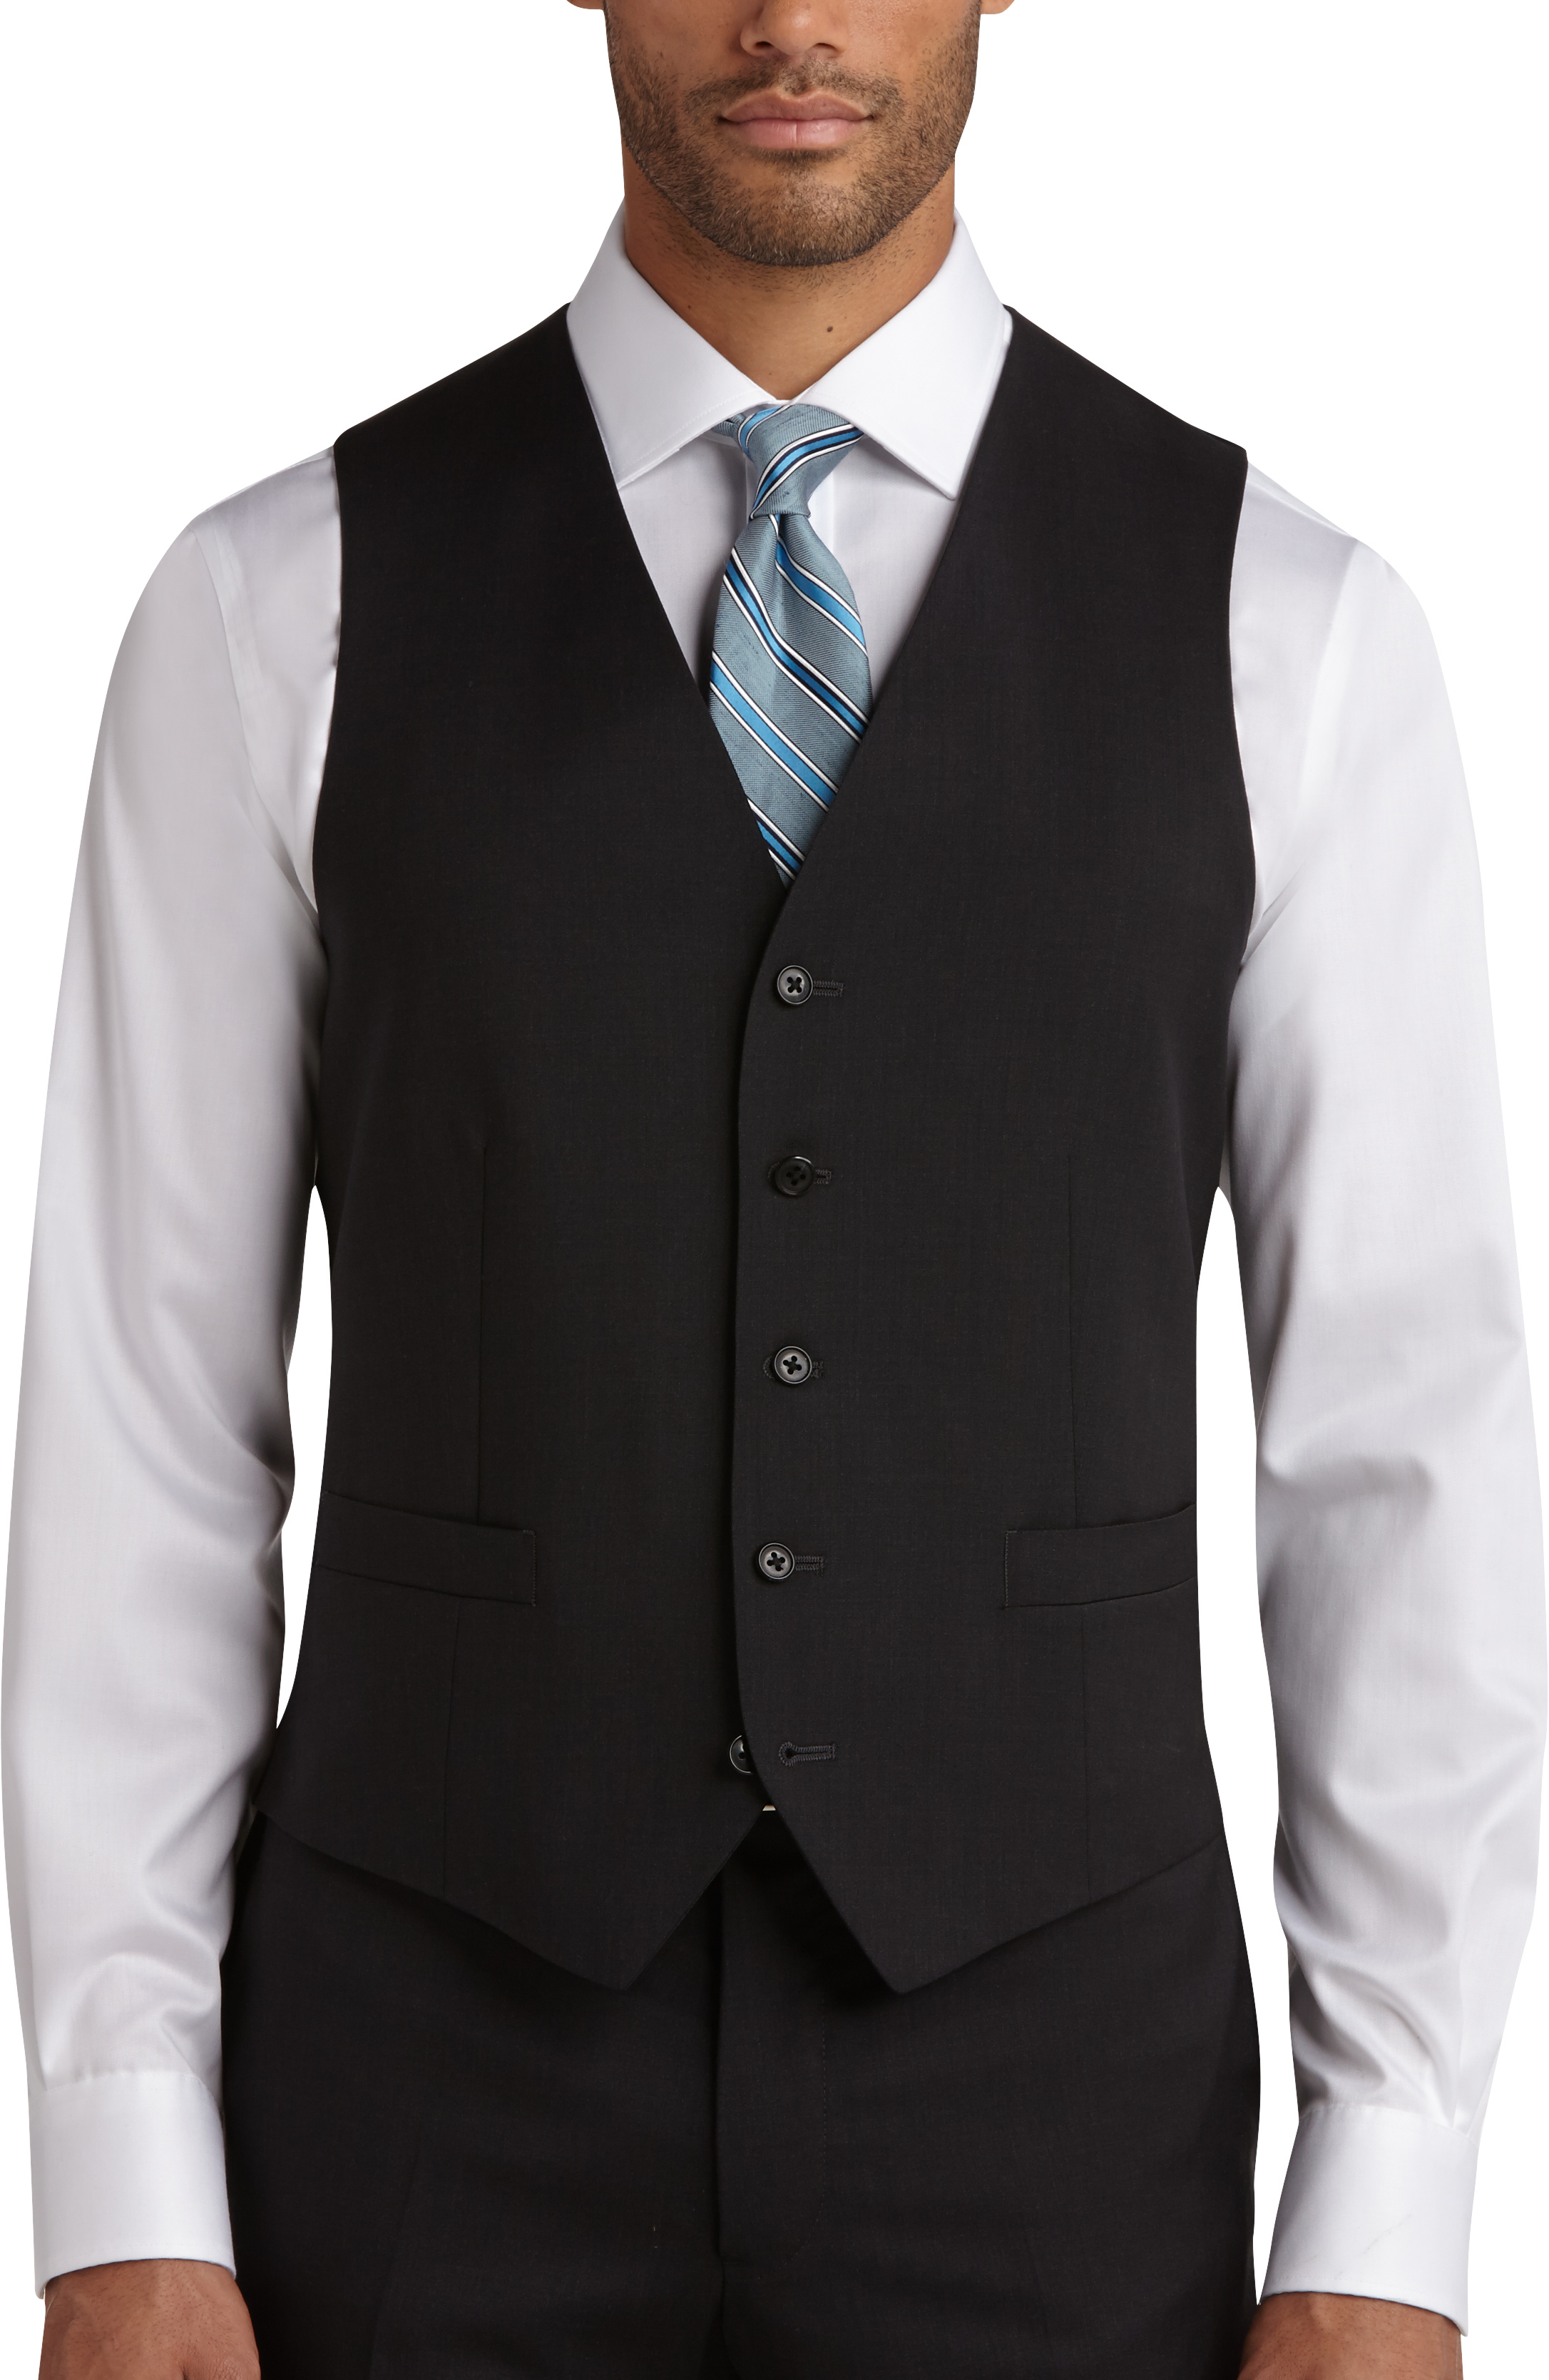 Joseph Abboud Charcoal Modern Fit Suit Separates Vest - Men's Suits ...